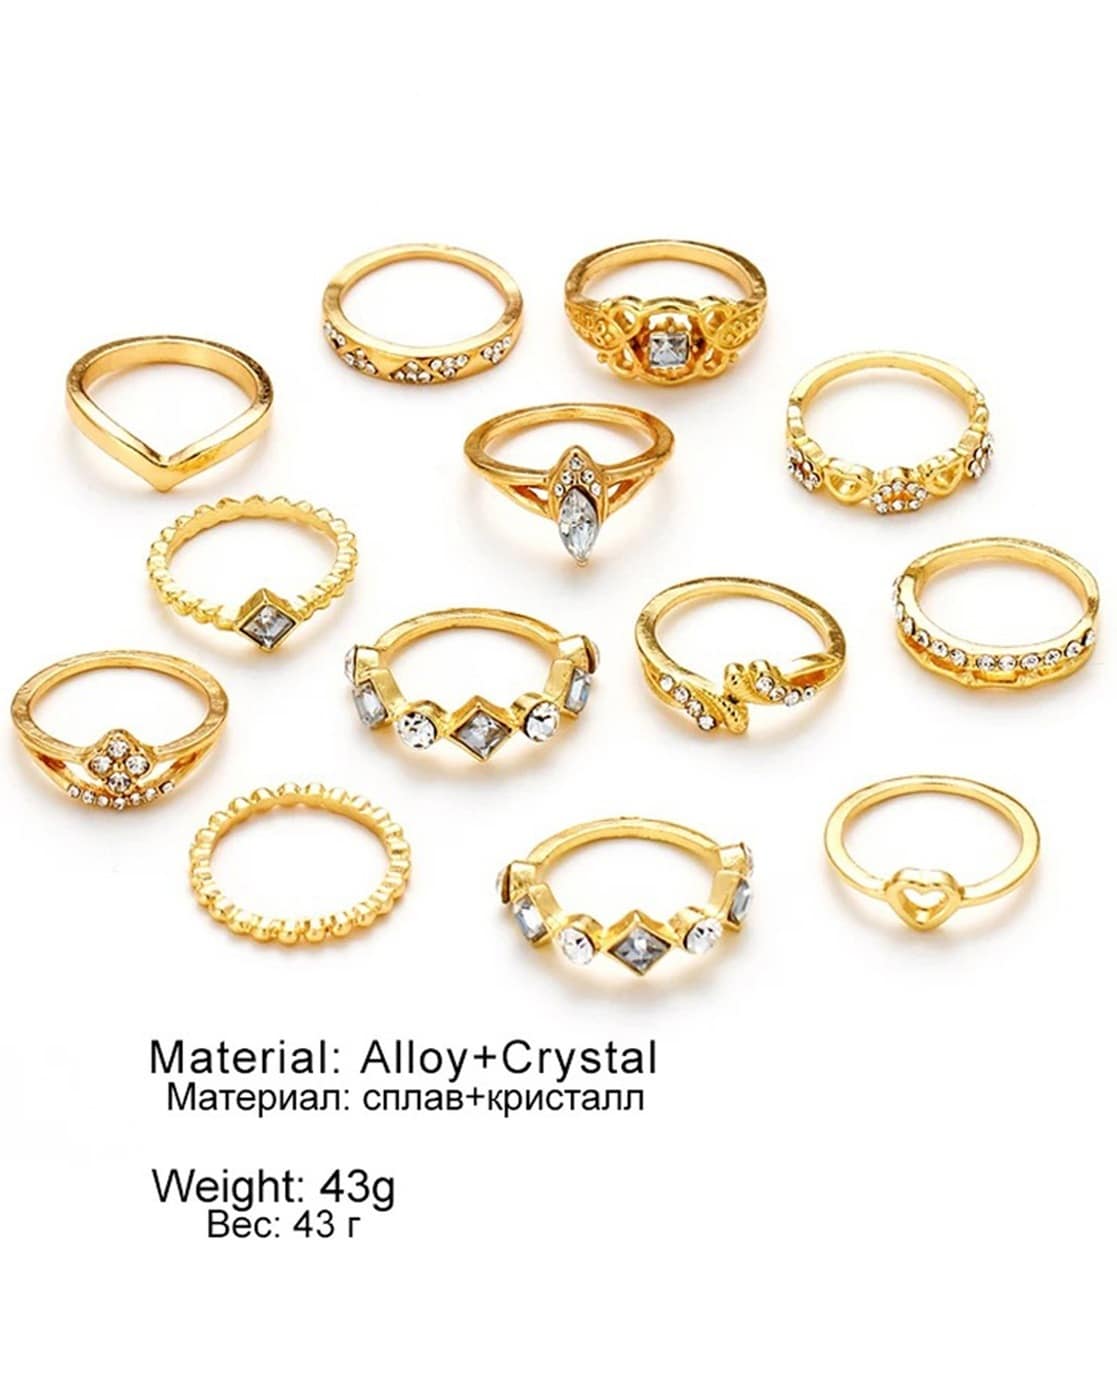 Elegant 22 Karat Yellow Gold Finger Ring